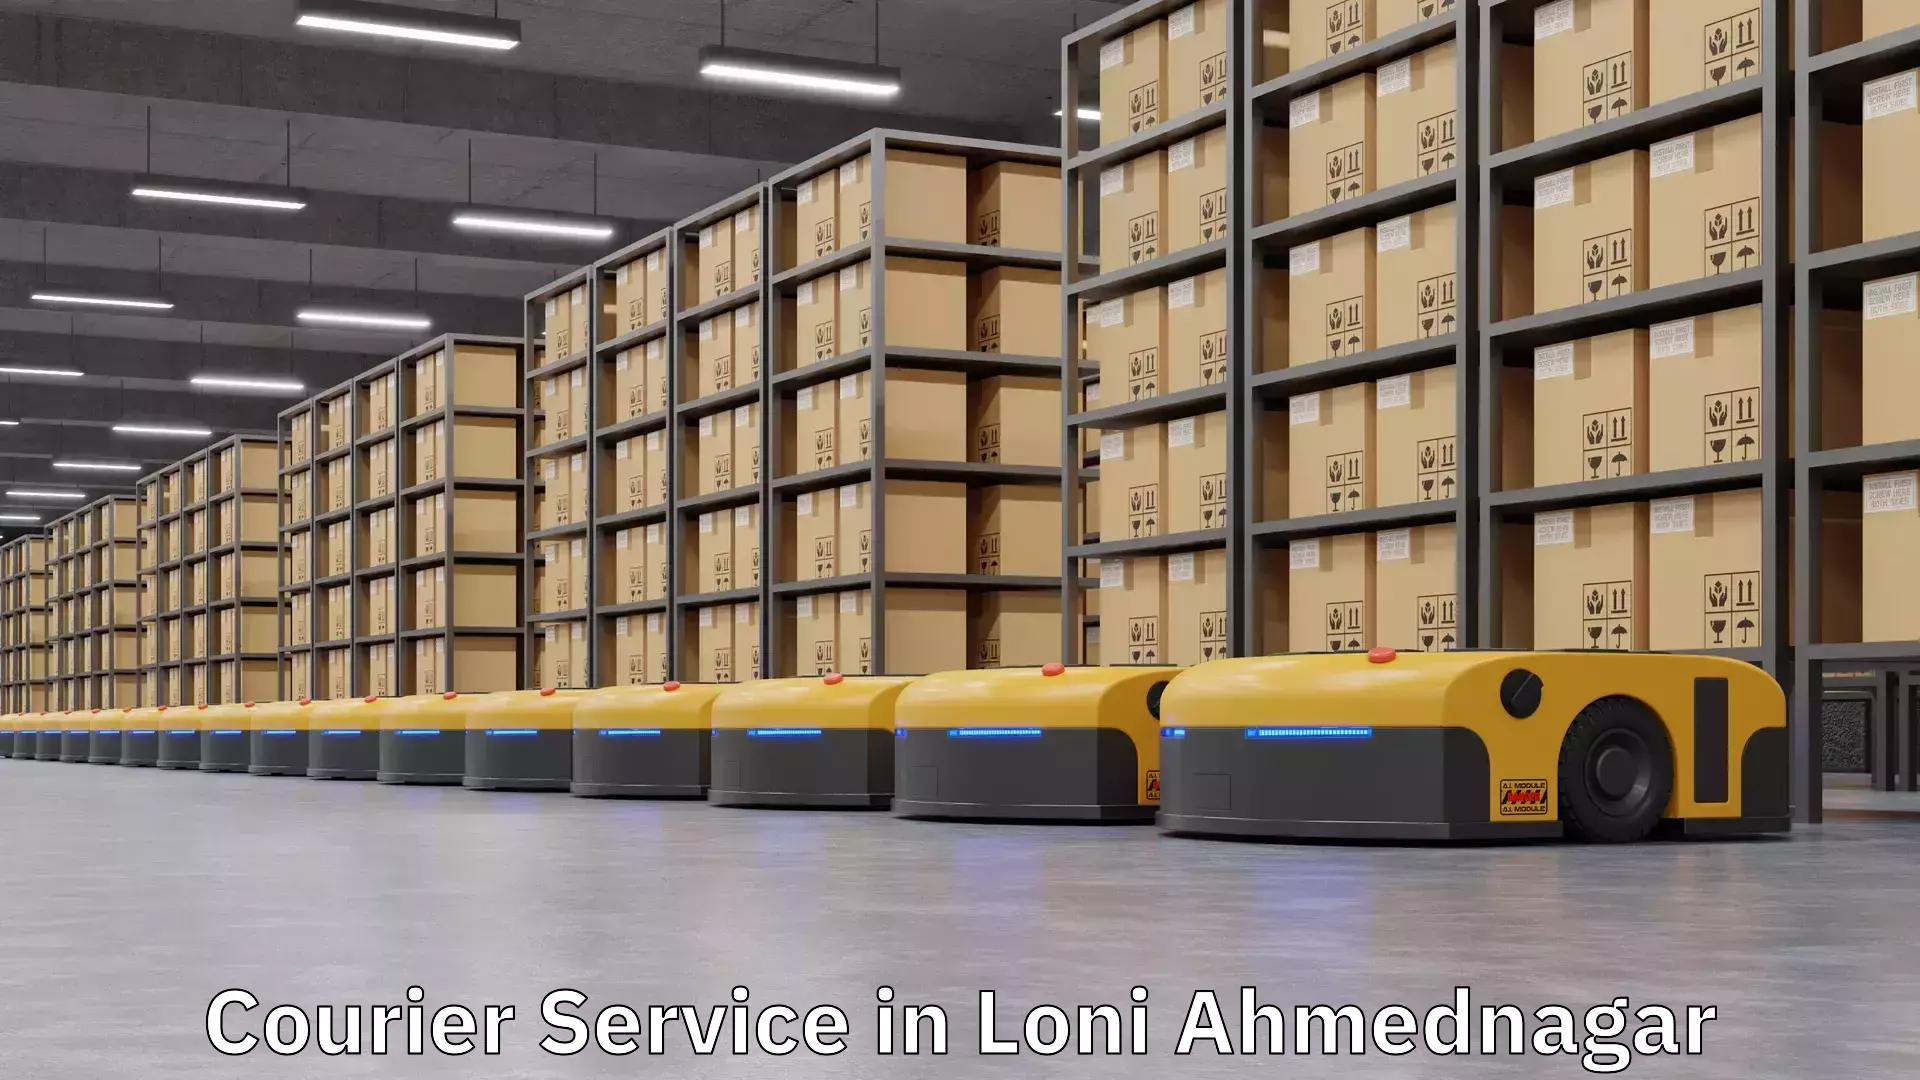 Comprehensive logistics in Loni Ahmednagar